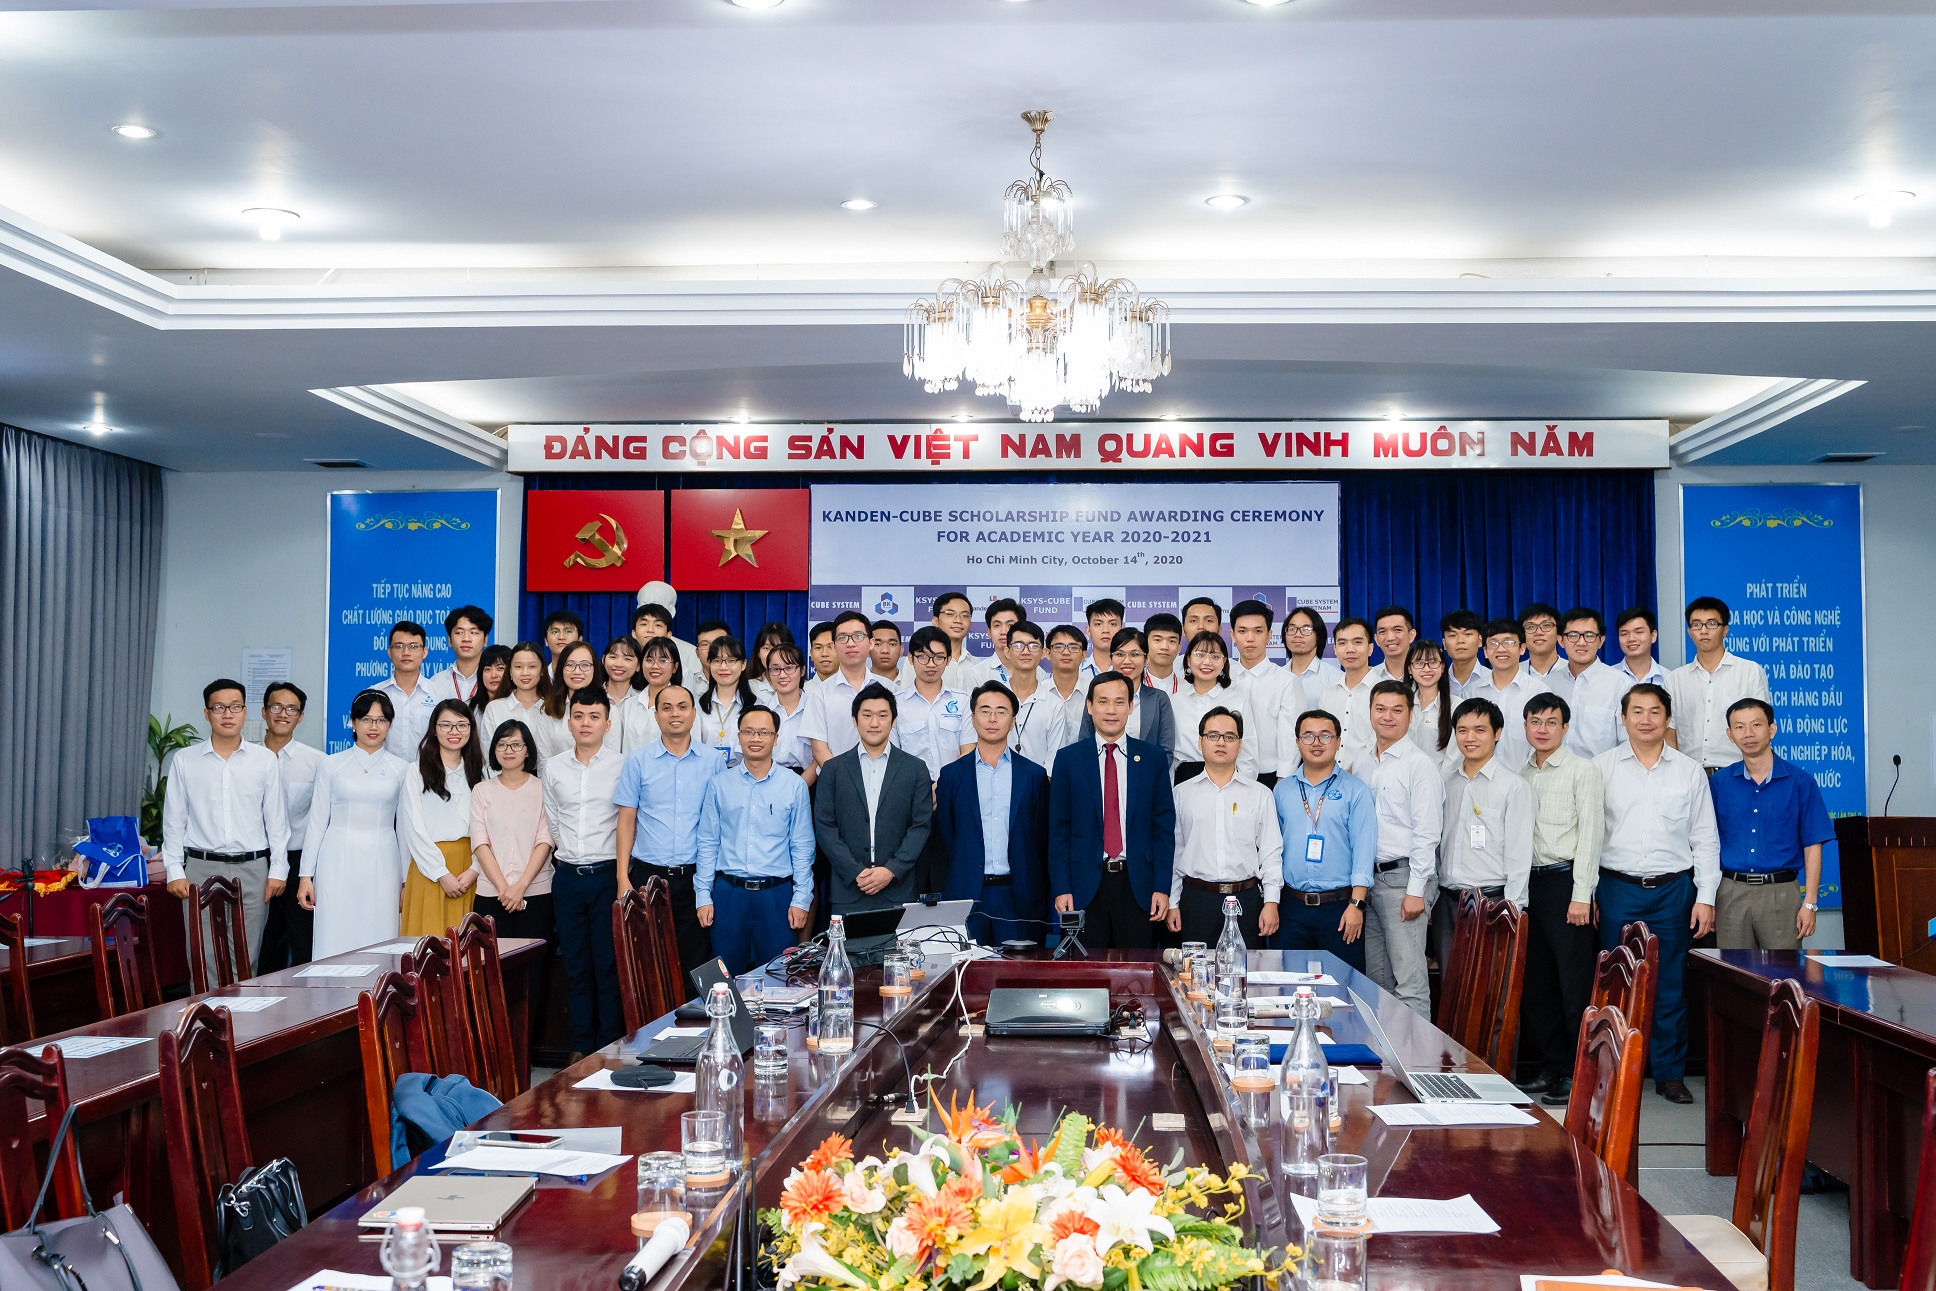 Lễ trao học bổng “KSYS – CUBE FUND” tại Trường Đại học Bách Khoa TP. Hồ Chí Minh tháng 10 năm 2020